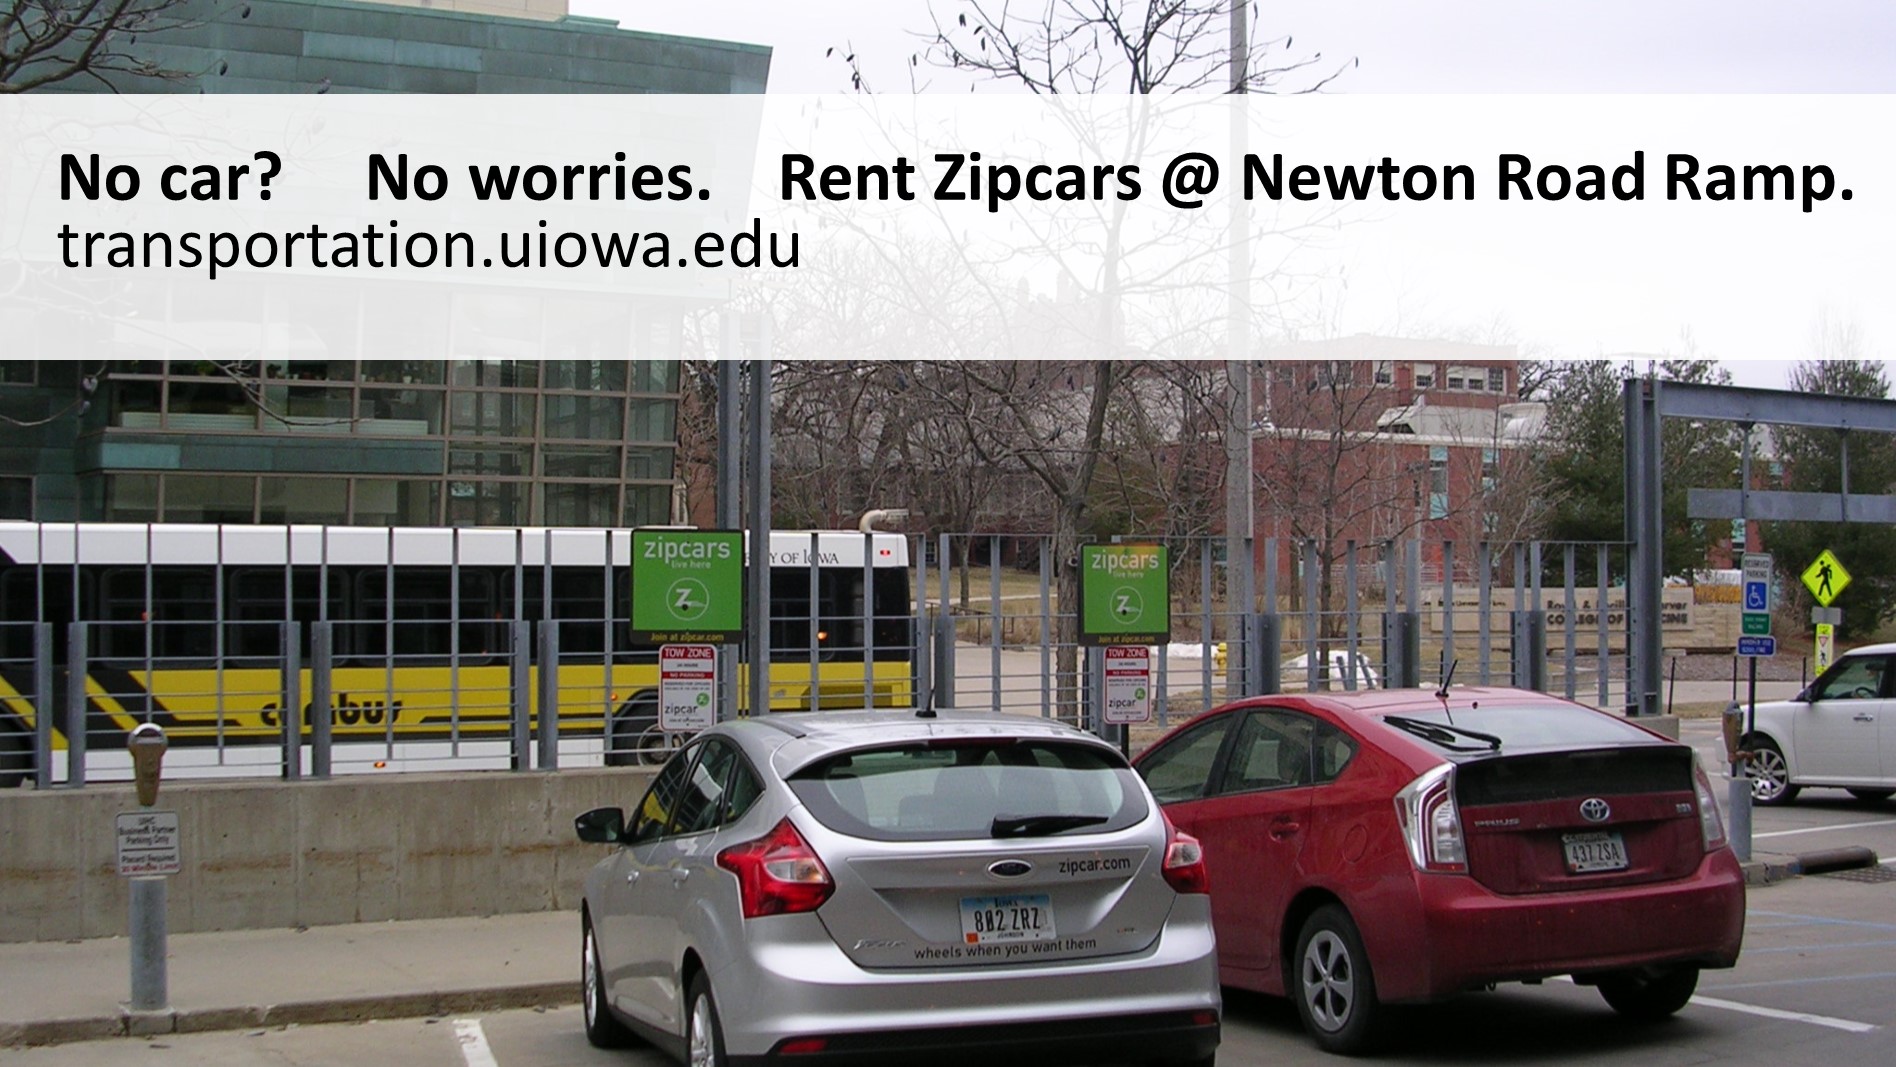 No car, no worries. Rent a Zipcar at Newton Road Ramp.